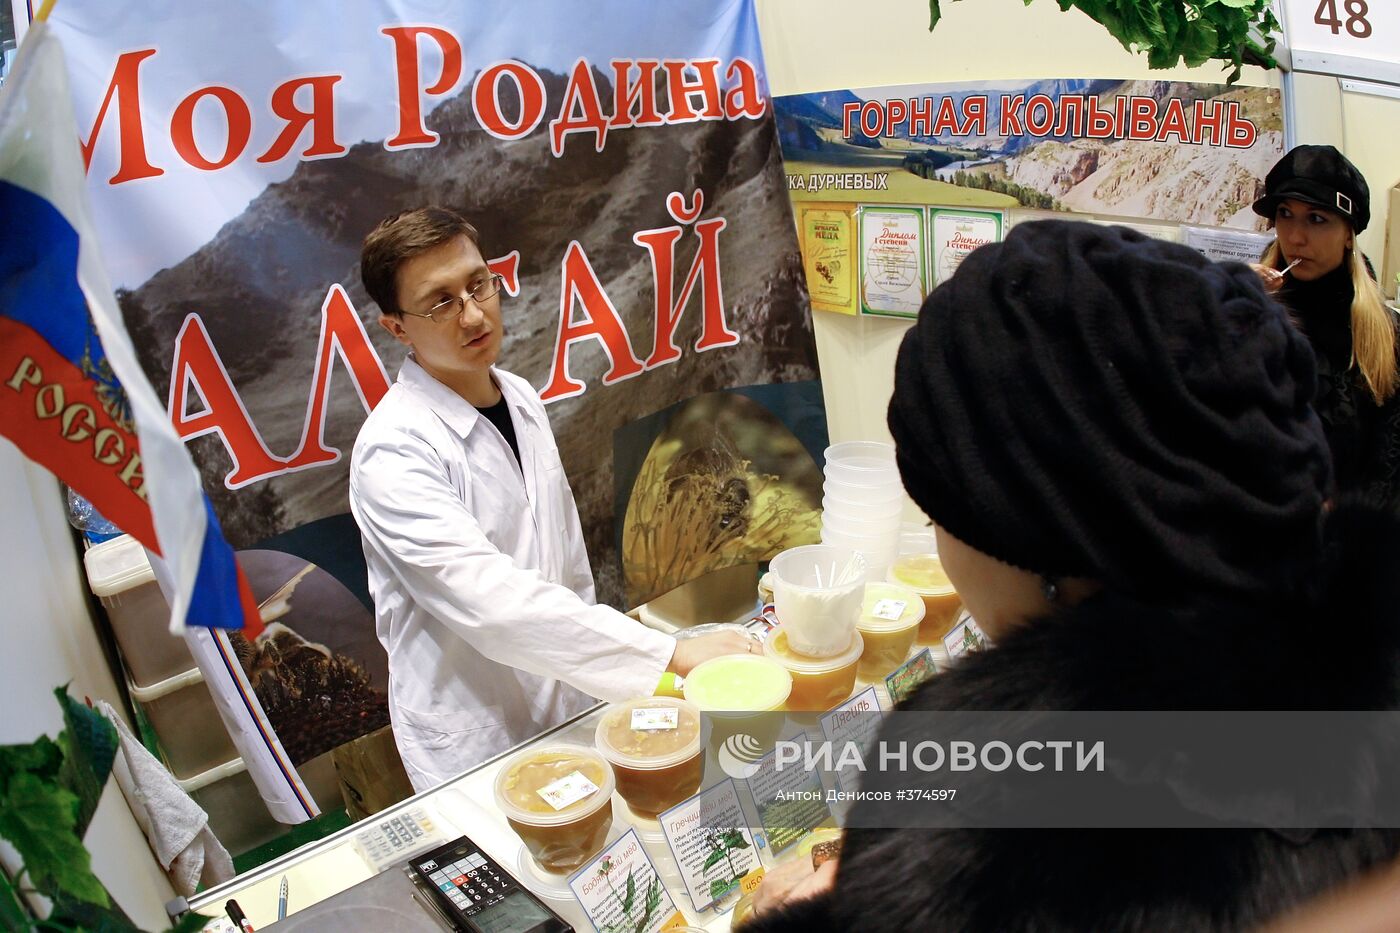 XXI Всероссийская ярмарка меда открылась в Москве